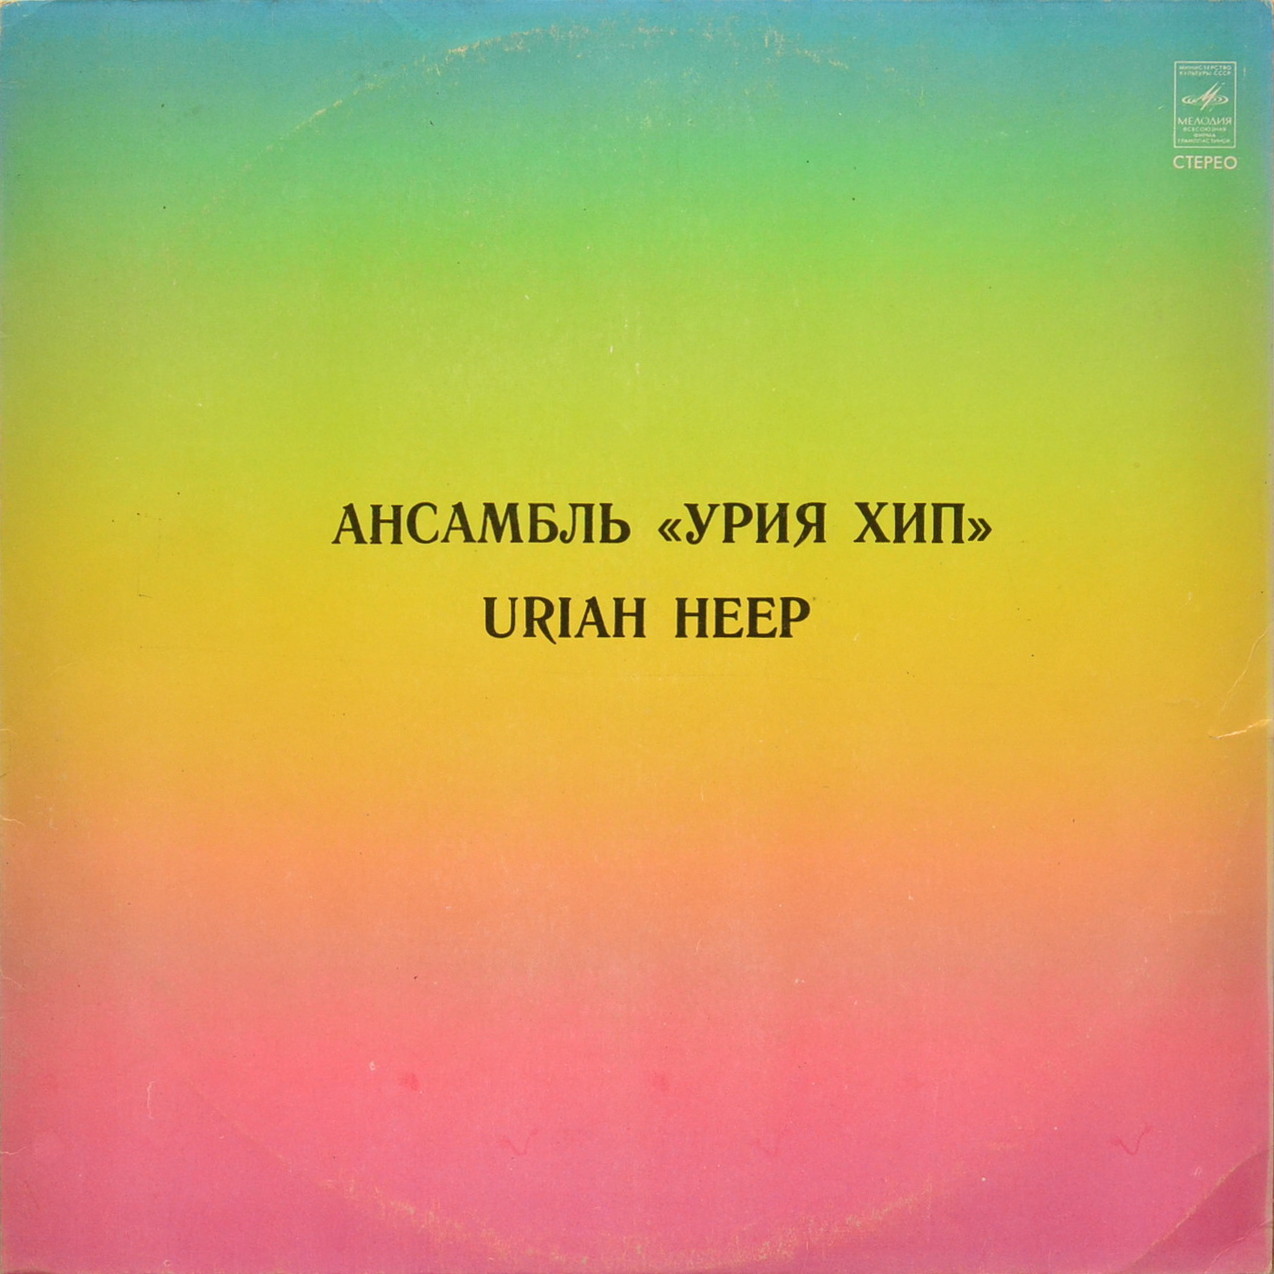 АНСАМБЛЬ «УРИЯ ХИП» (Uriah Heep) — на английском языке